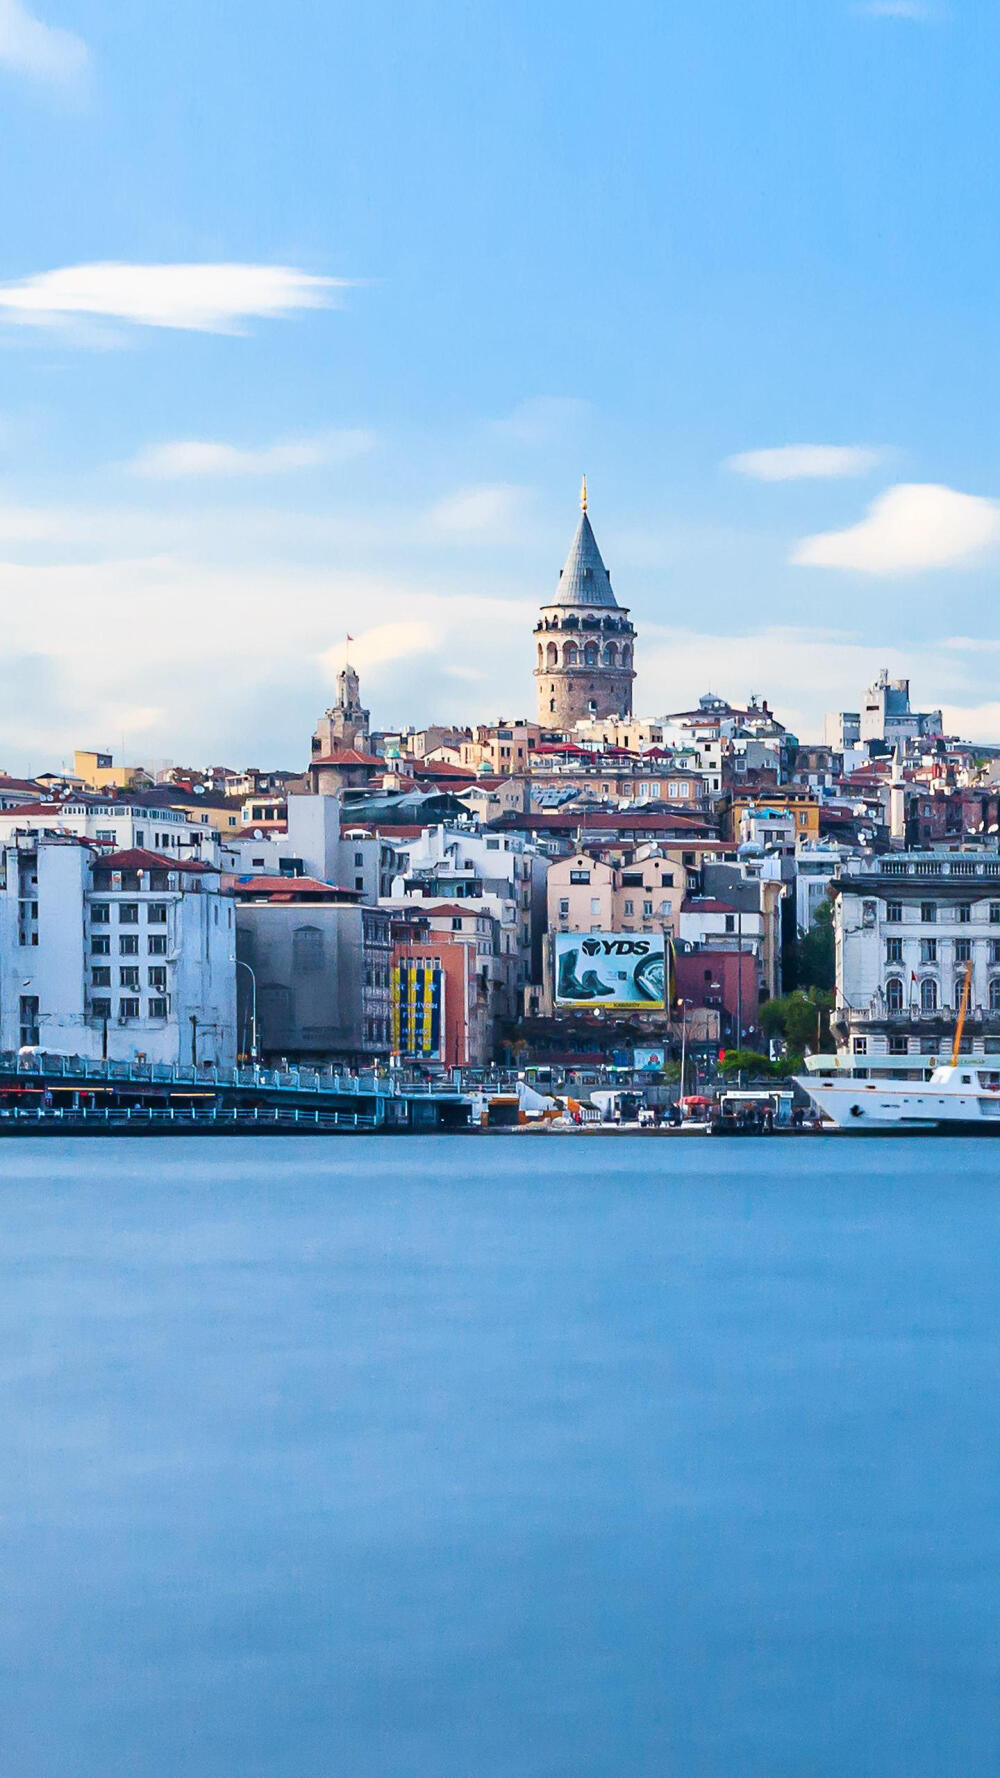 土耳其——伊斯坦布尔—华为杂志锁屏 土耳其最大的港口城市,这里曾是